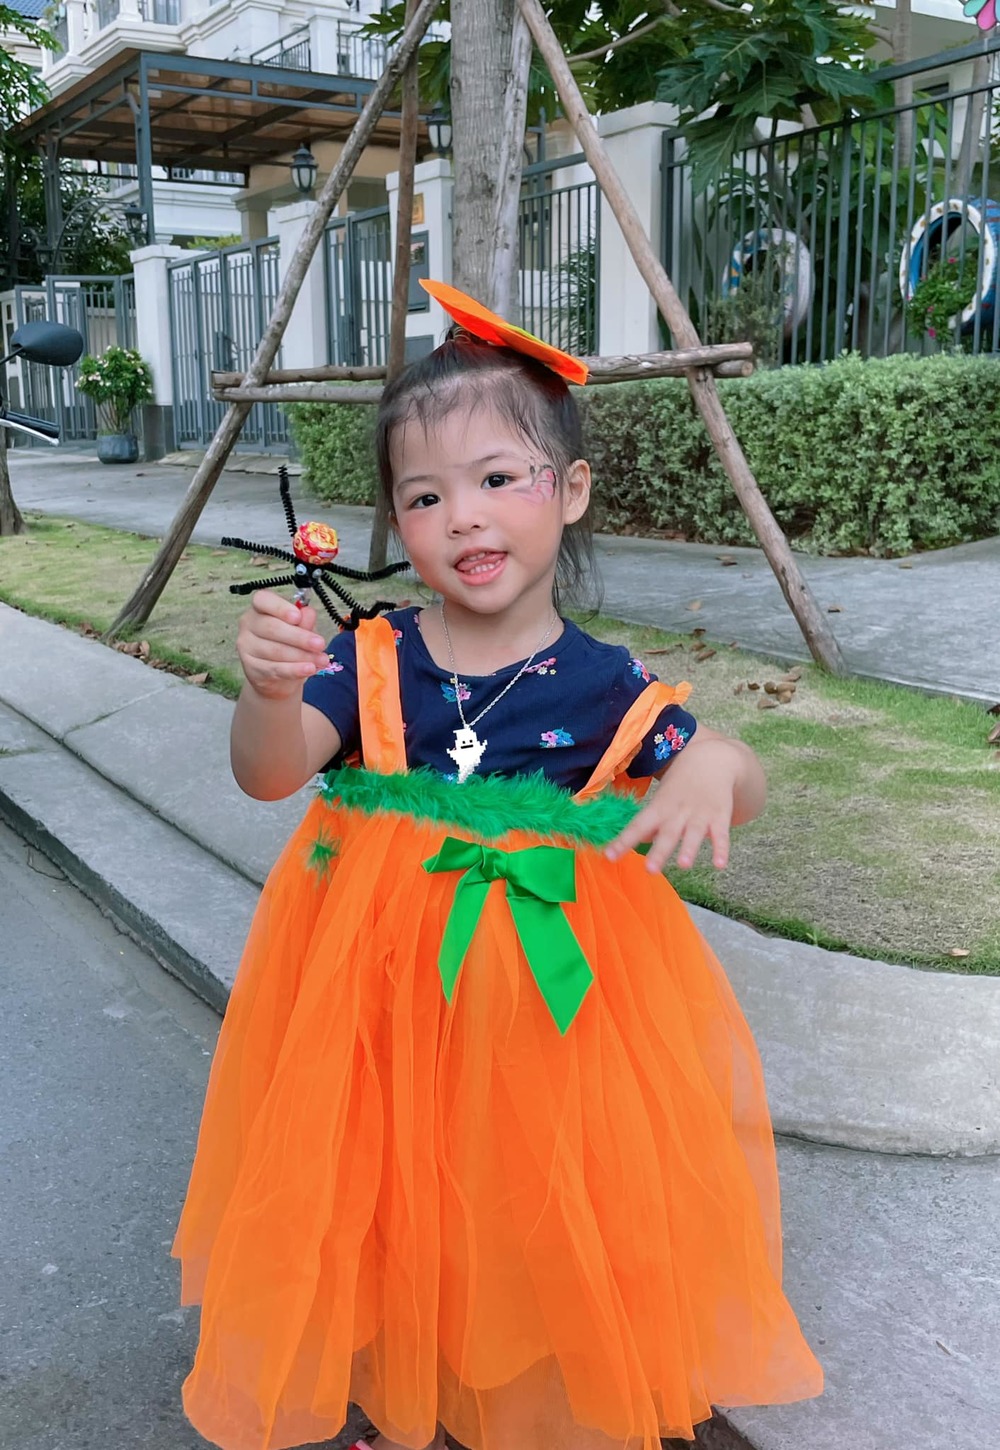 
Emily không quên diện cho công chúa duy nhất với chiếc đầm tông màu cam, hợp với chủ đề Halloween. (Ảnh: FBNV) - Tin sao Viet - Tin tuc sao Viet - Scandal sao Viet - Tin tuc cua Sao - Tin cua Sao